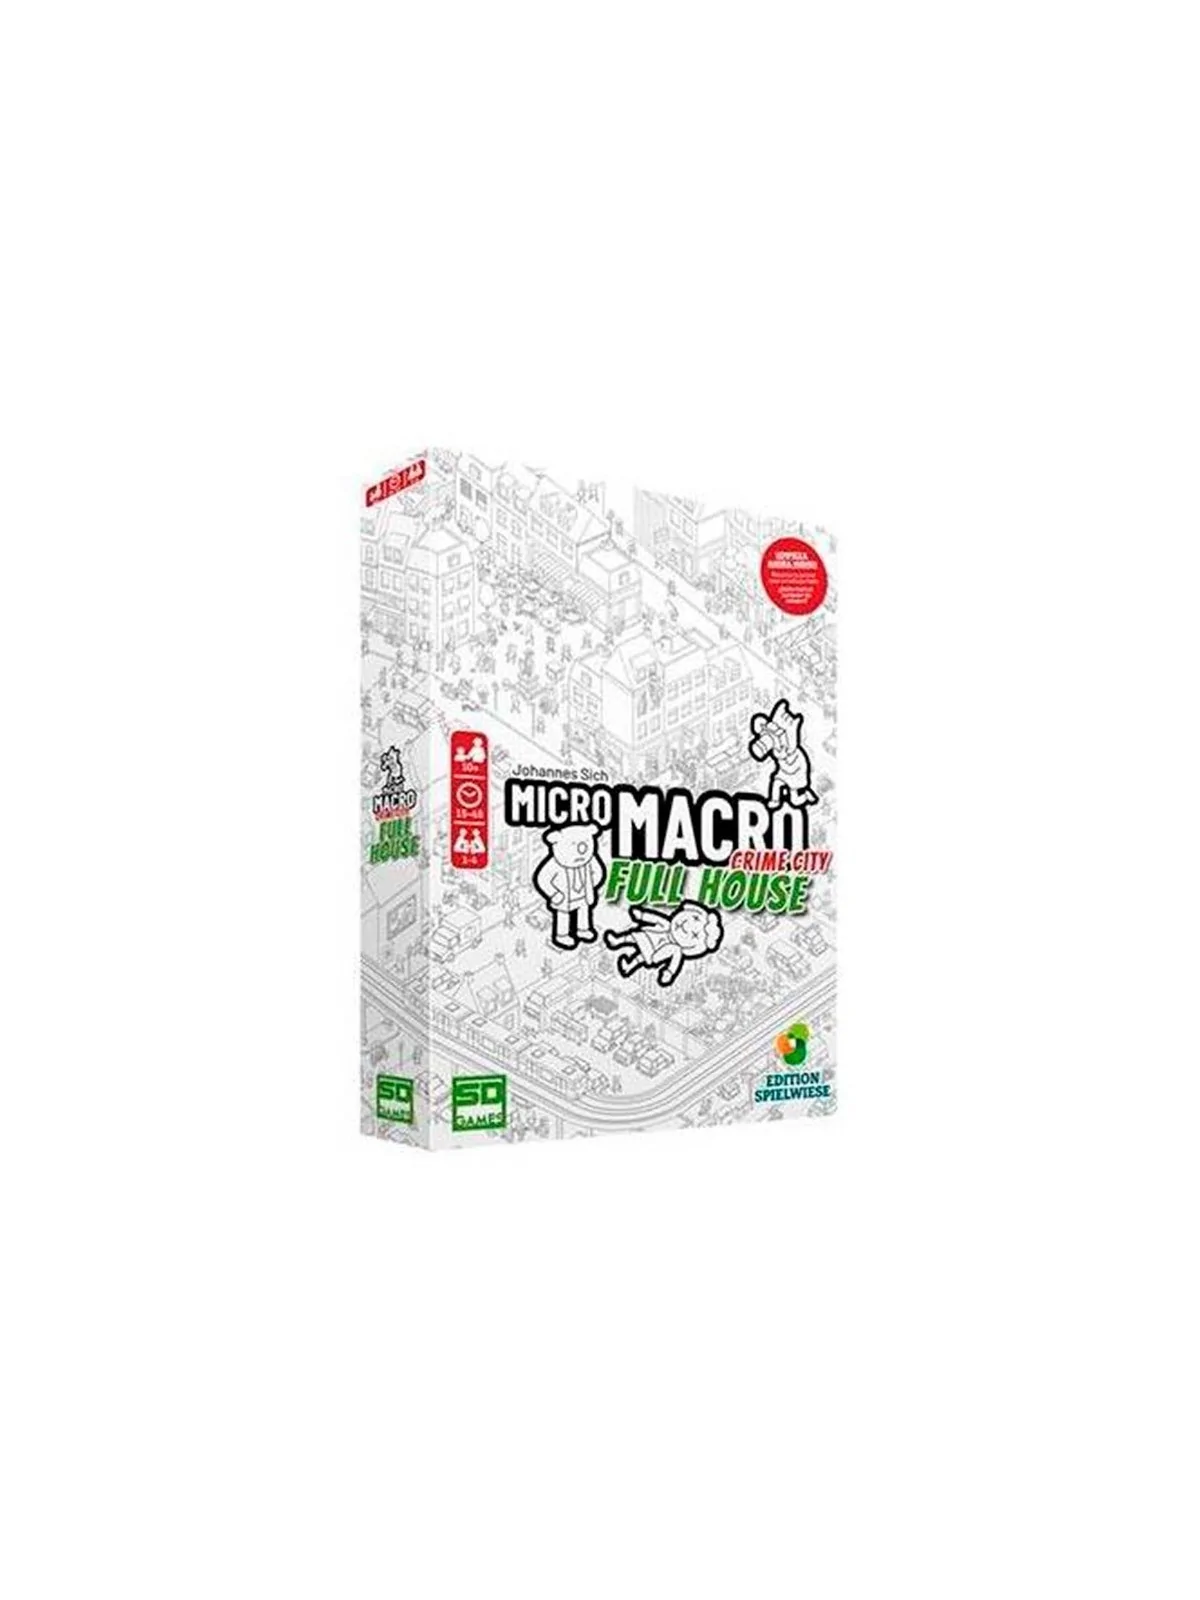 Comprar Micro Macro: Full House (Inglés) barato al mejor precio 22,46 